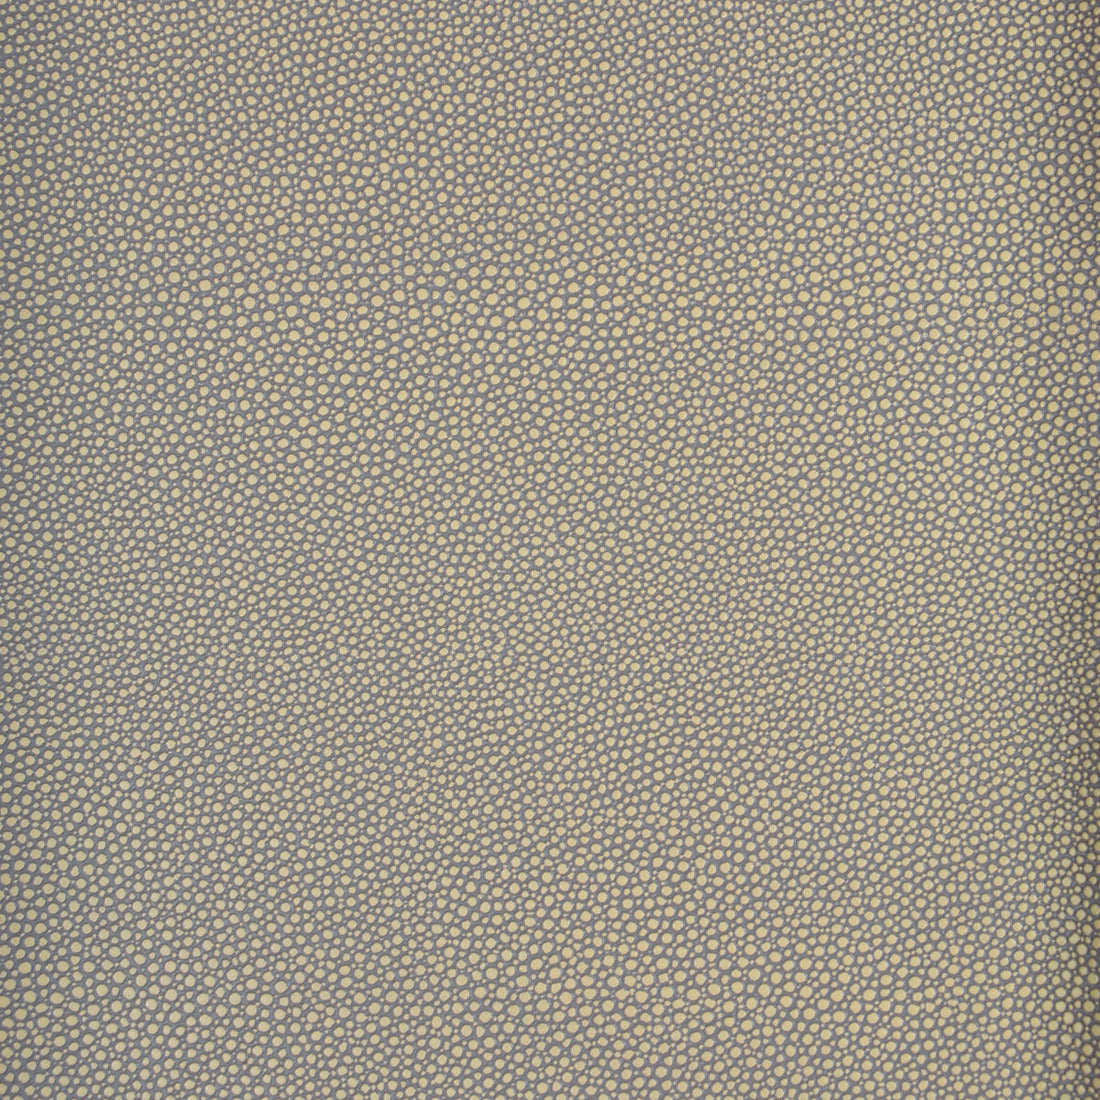 Kravet Design fabric in mindy-11 color - pattern MINDY.11.0 - by Kravet Design